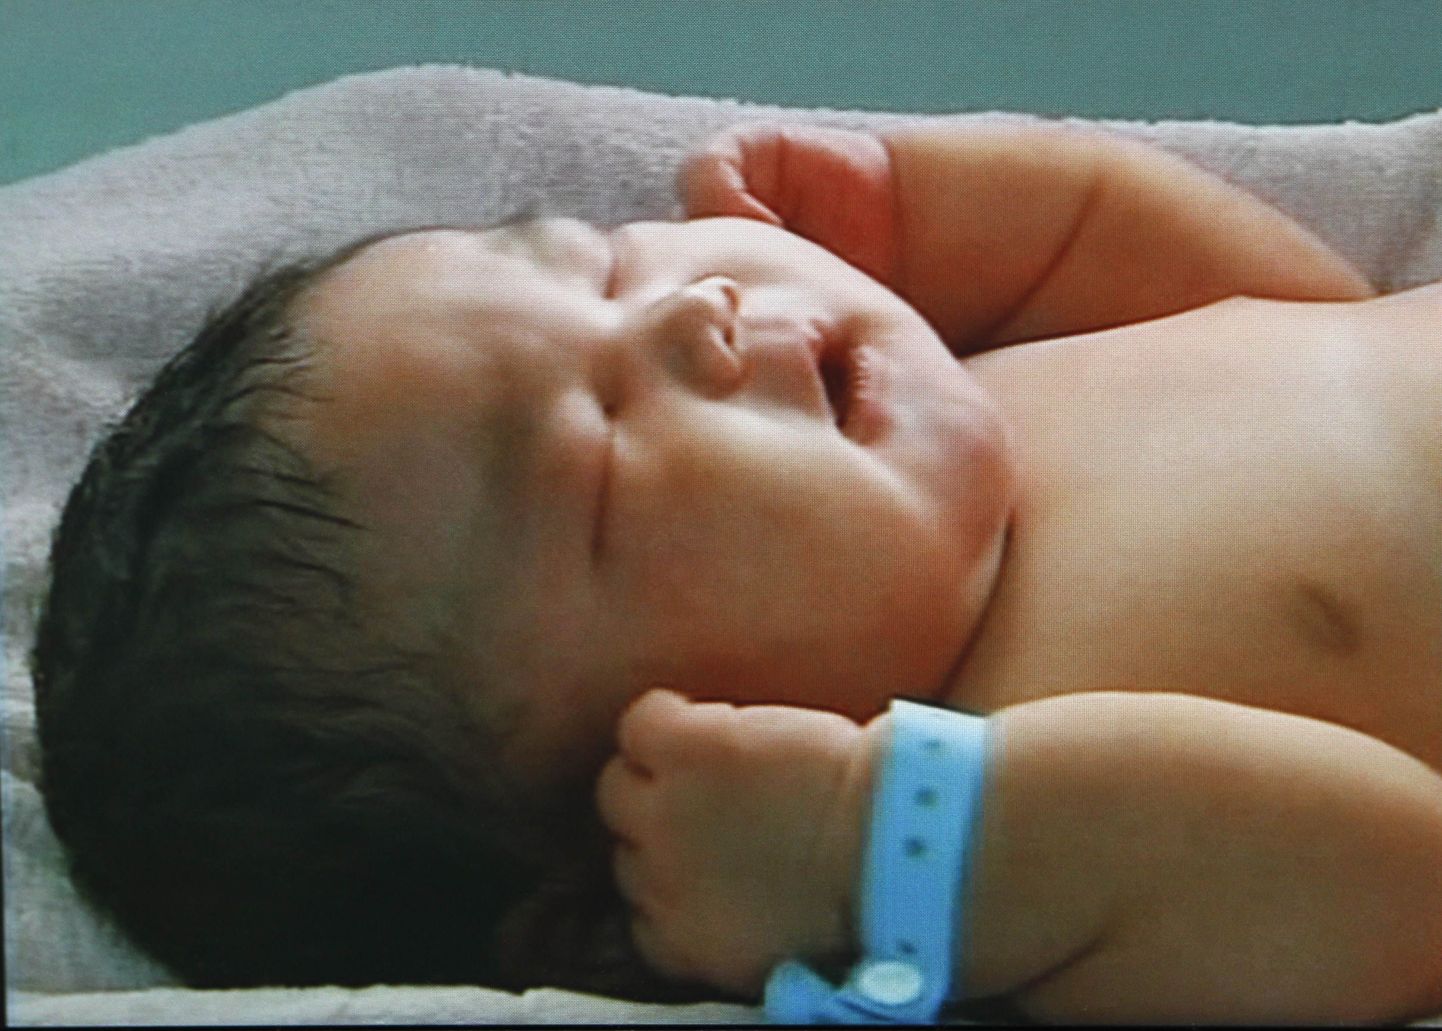 Hiinas sündinud Chun Chuni sünnikaal oli seitse kilogrammi